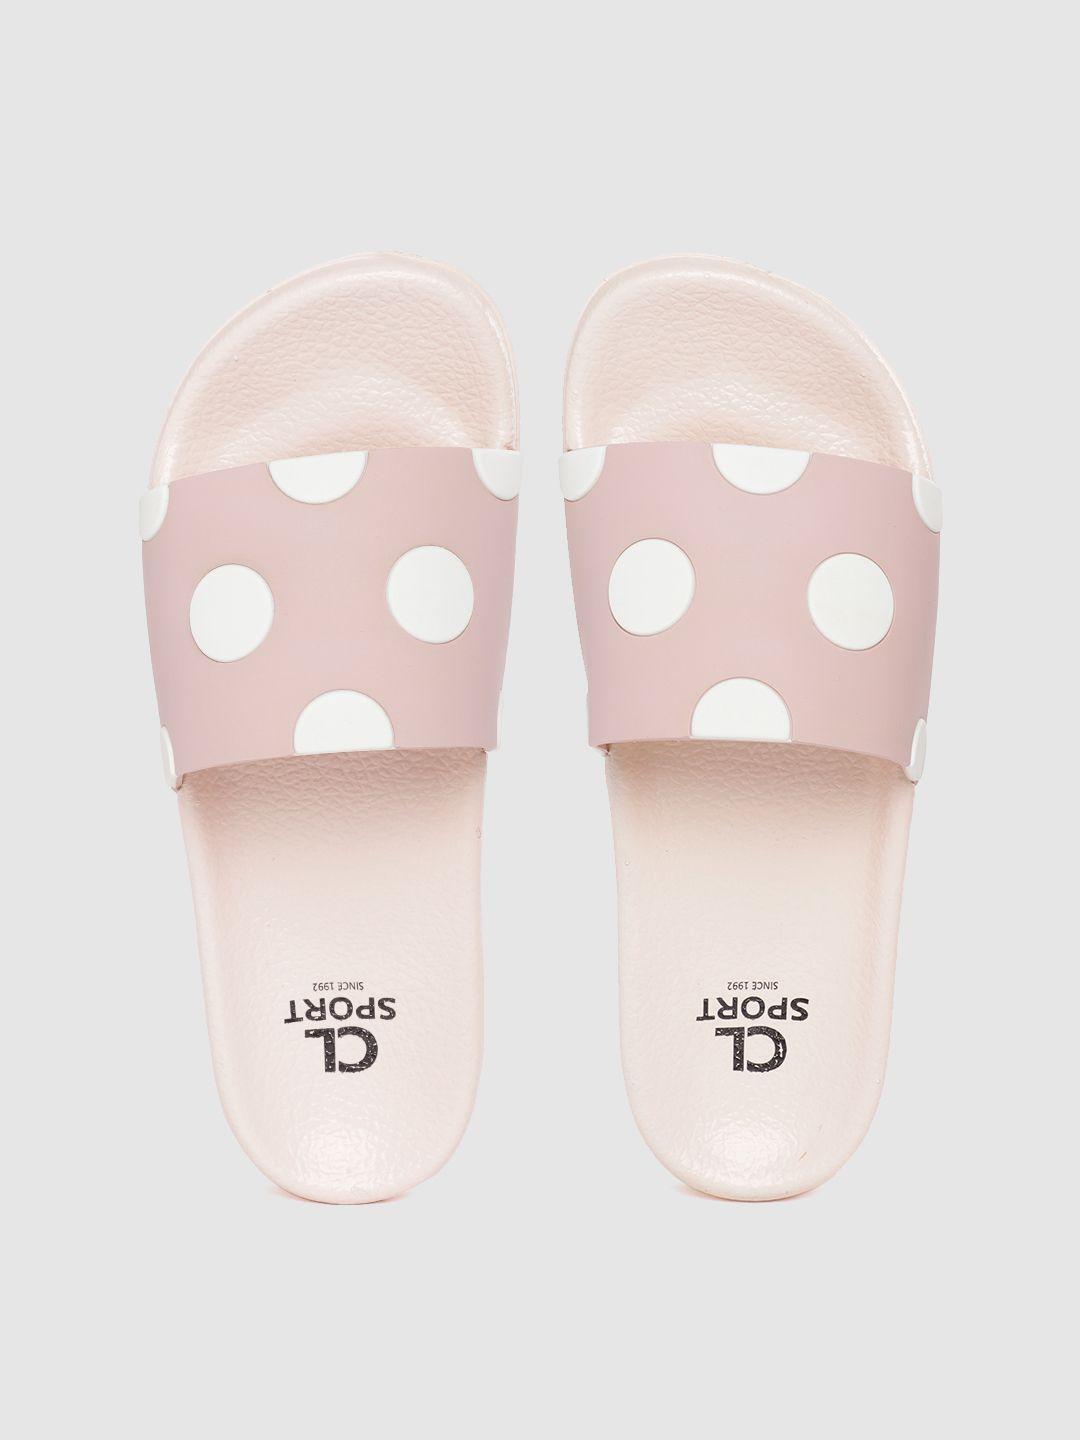 carlton london sports women pink & white polka dot print sliders